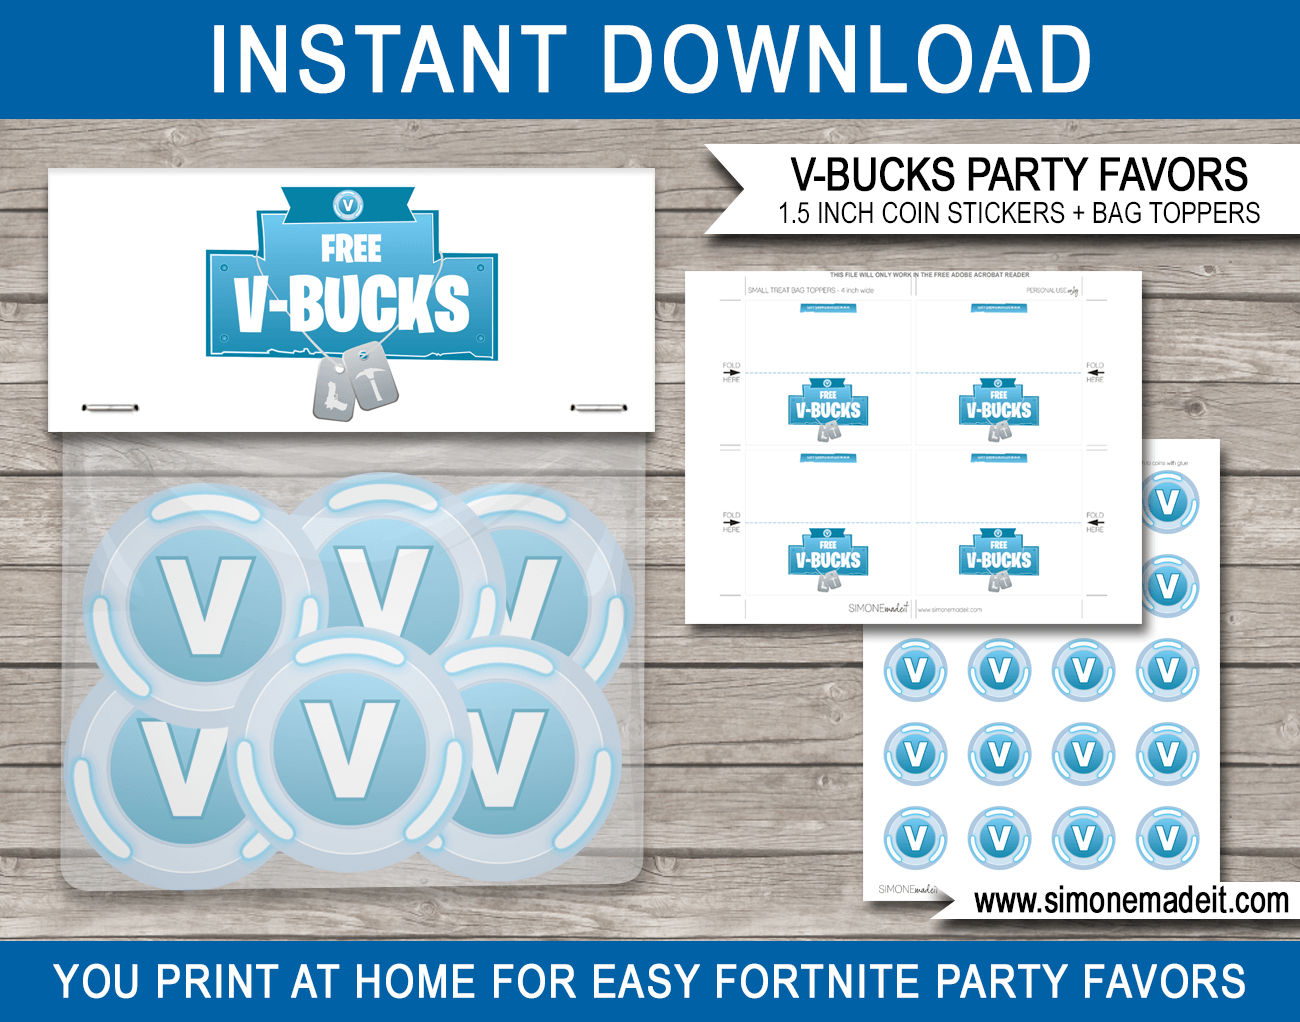 Fortnite V Bucks Printable Party Favors V Bucks Stickers Bag Toppers